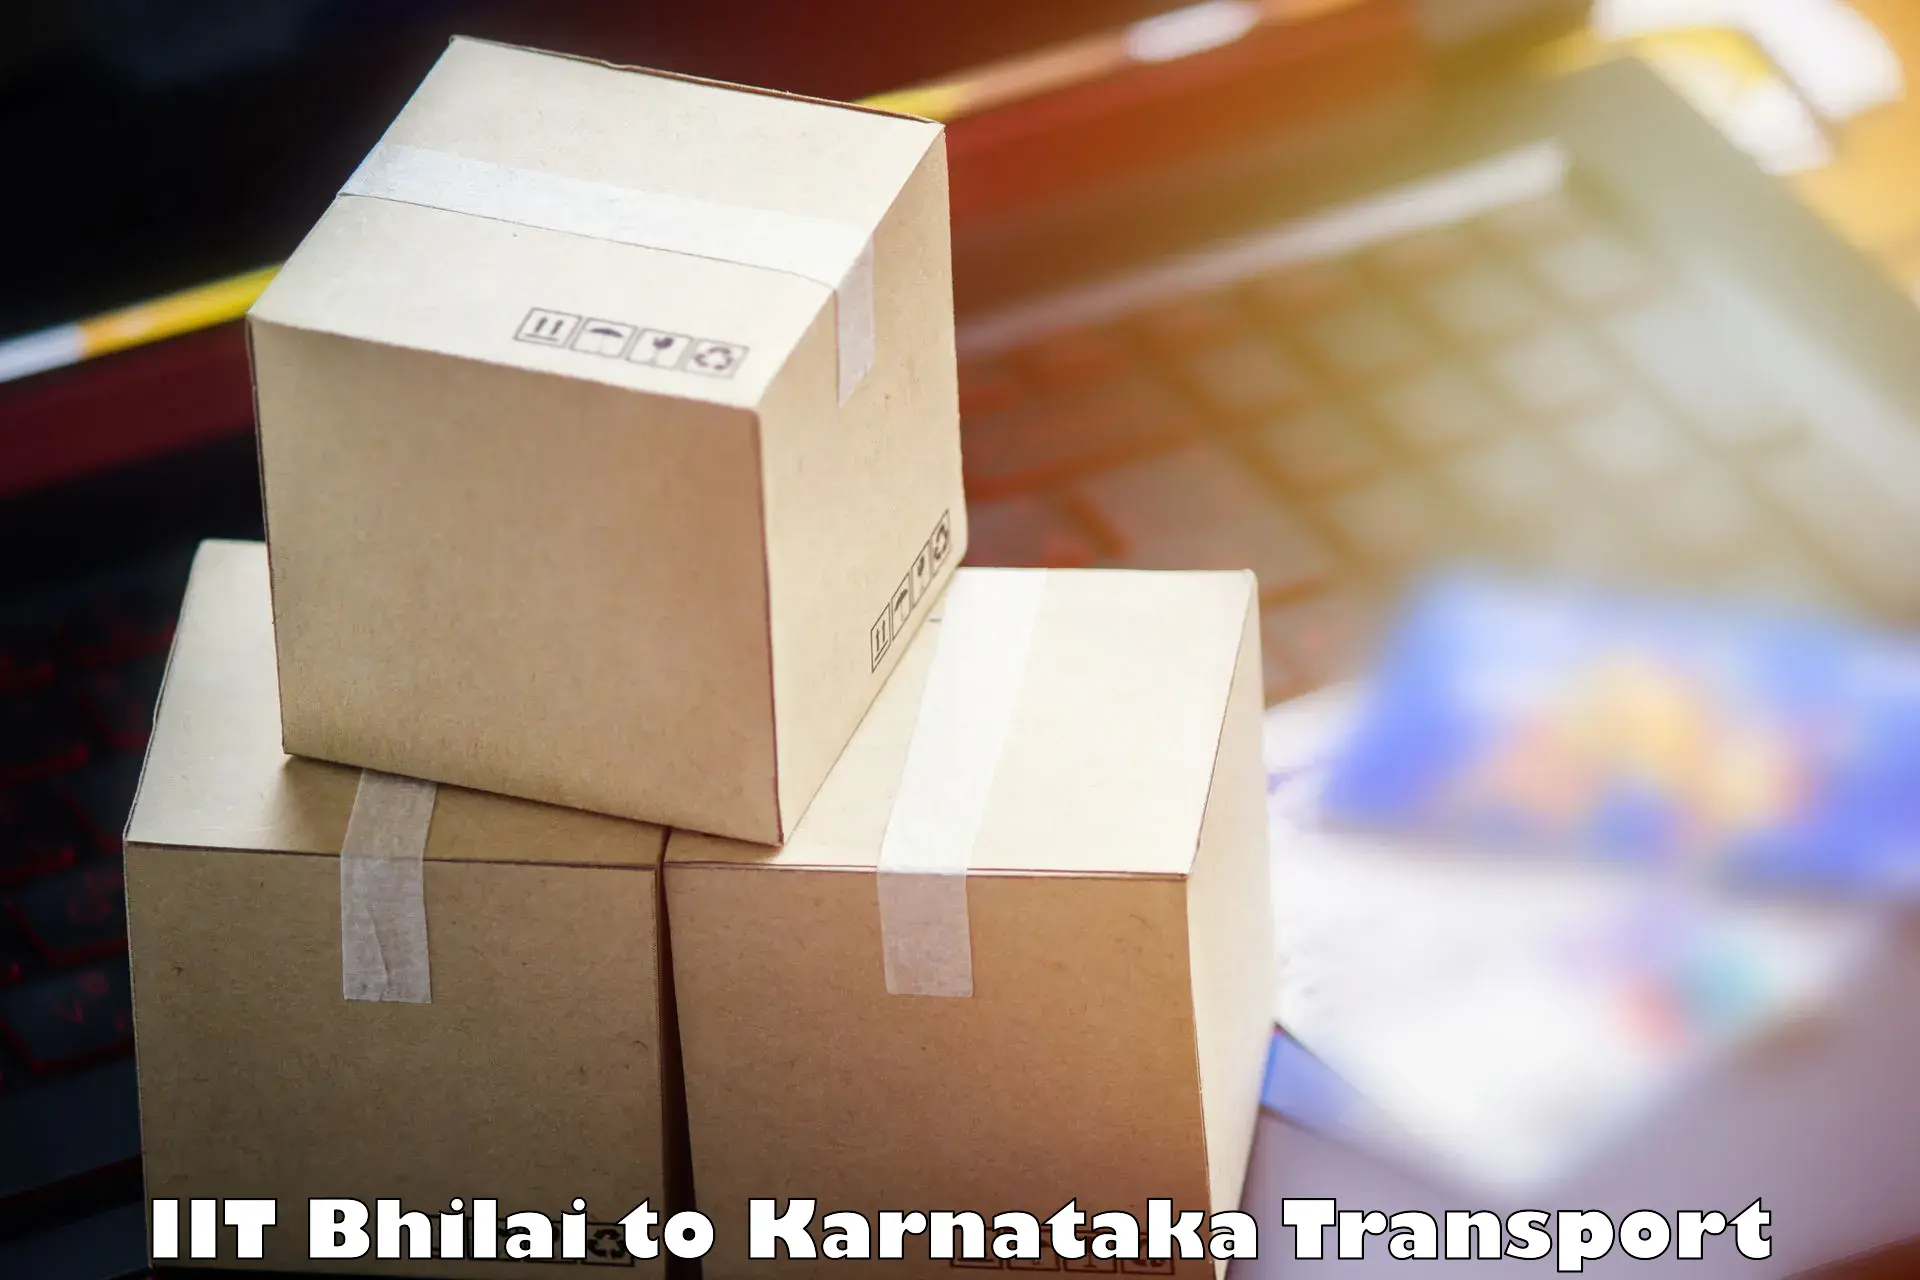 Daily transport service in IIT Bhilai to Kanjarakatte